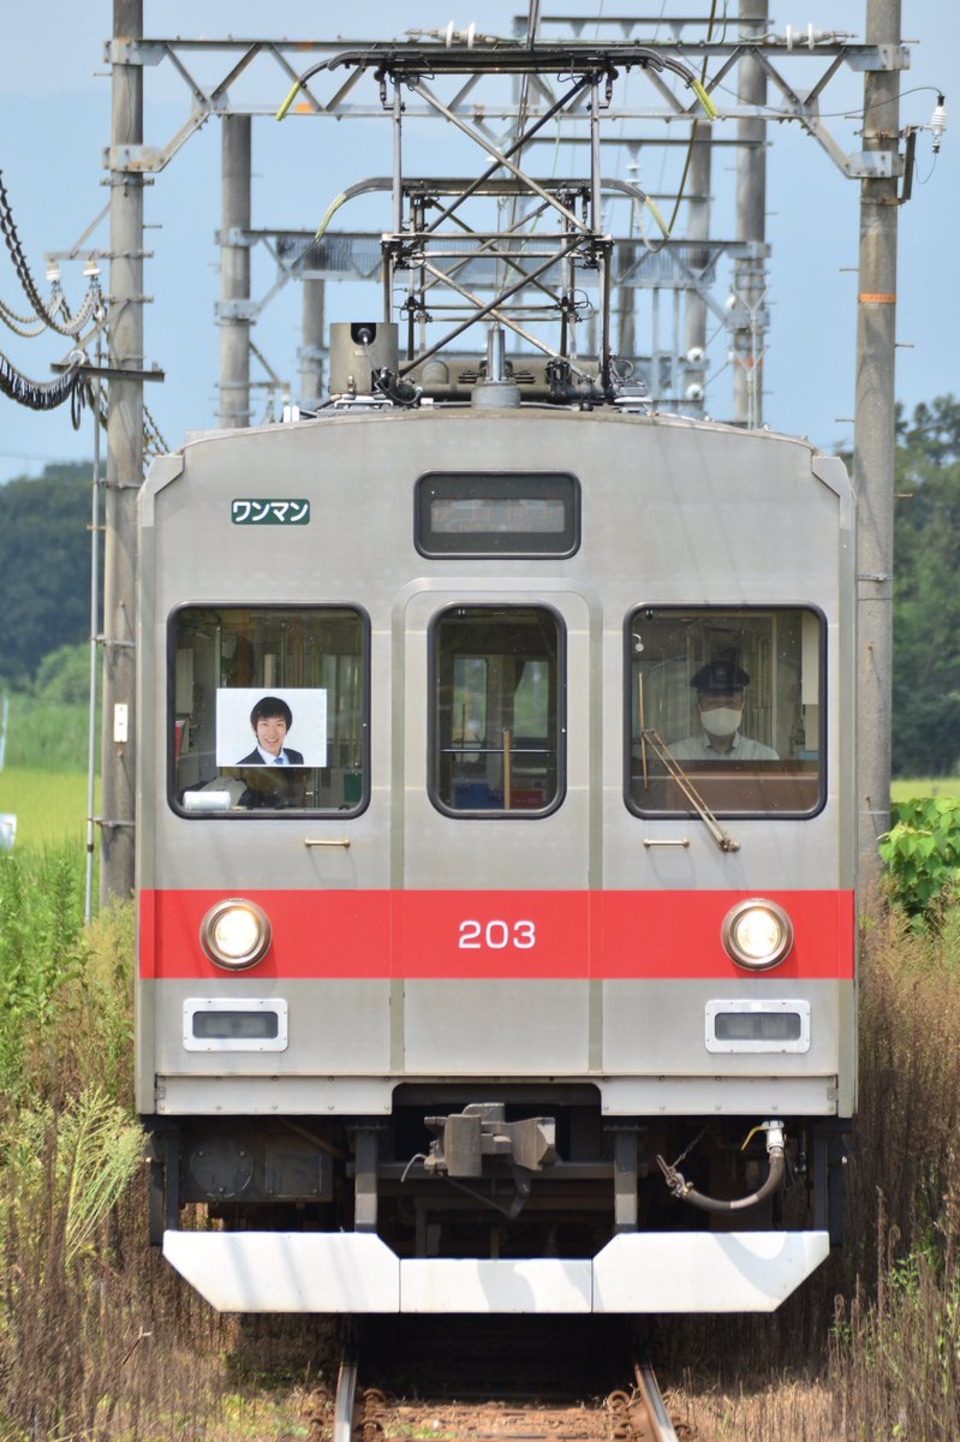 【伊賀鉄】200系SE53(203F)に「スーツ」氏の顔写真が張り出されるの拡大写真